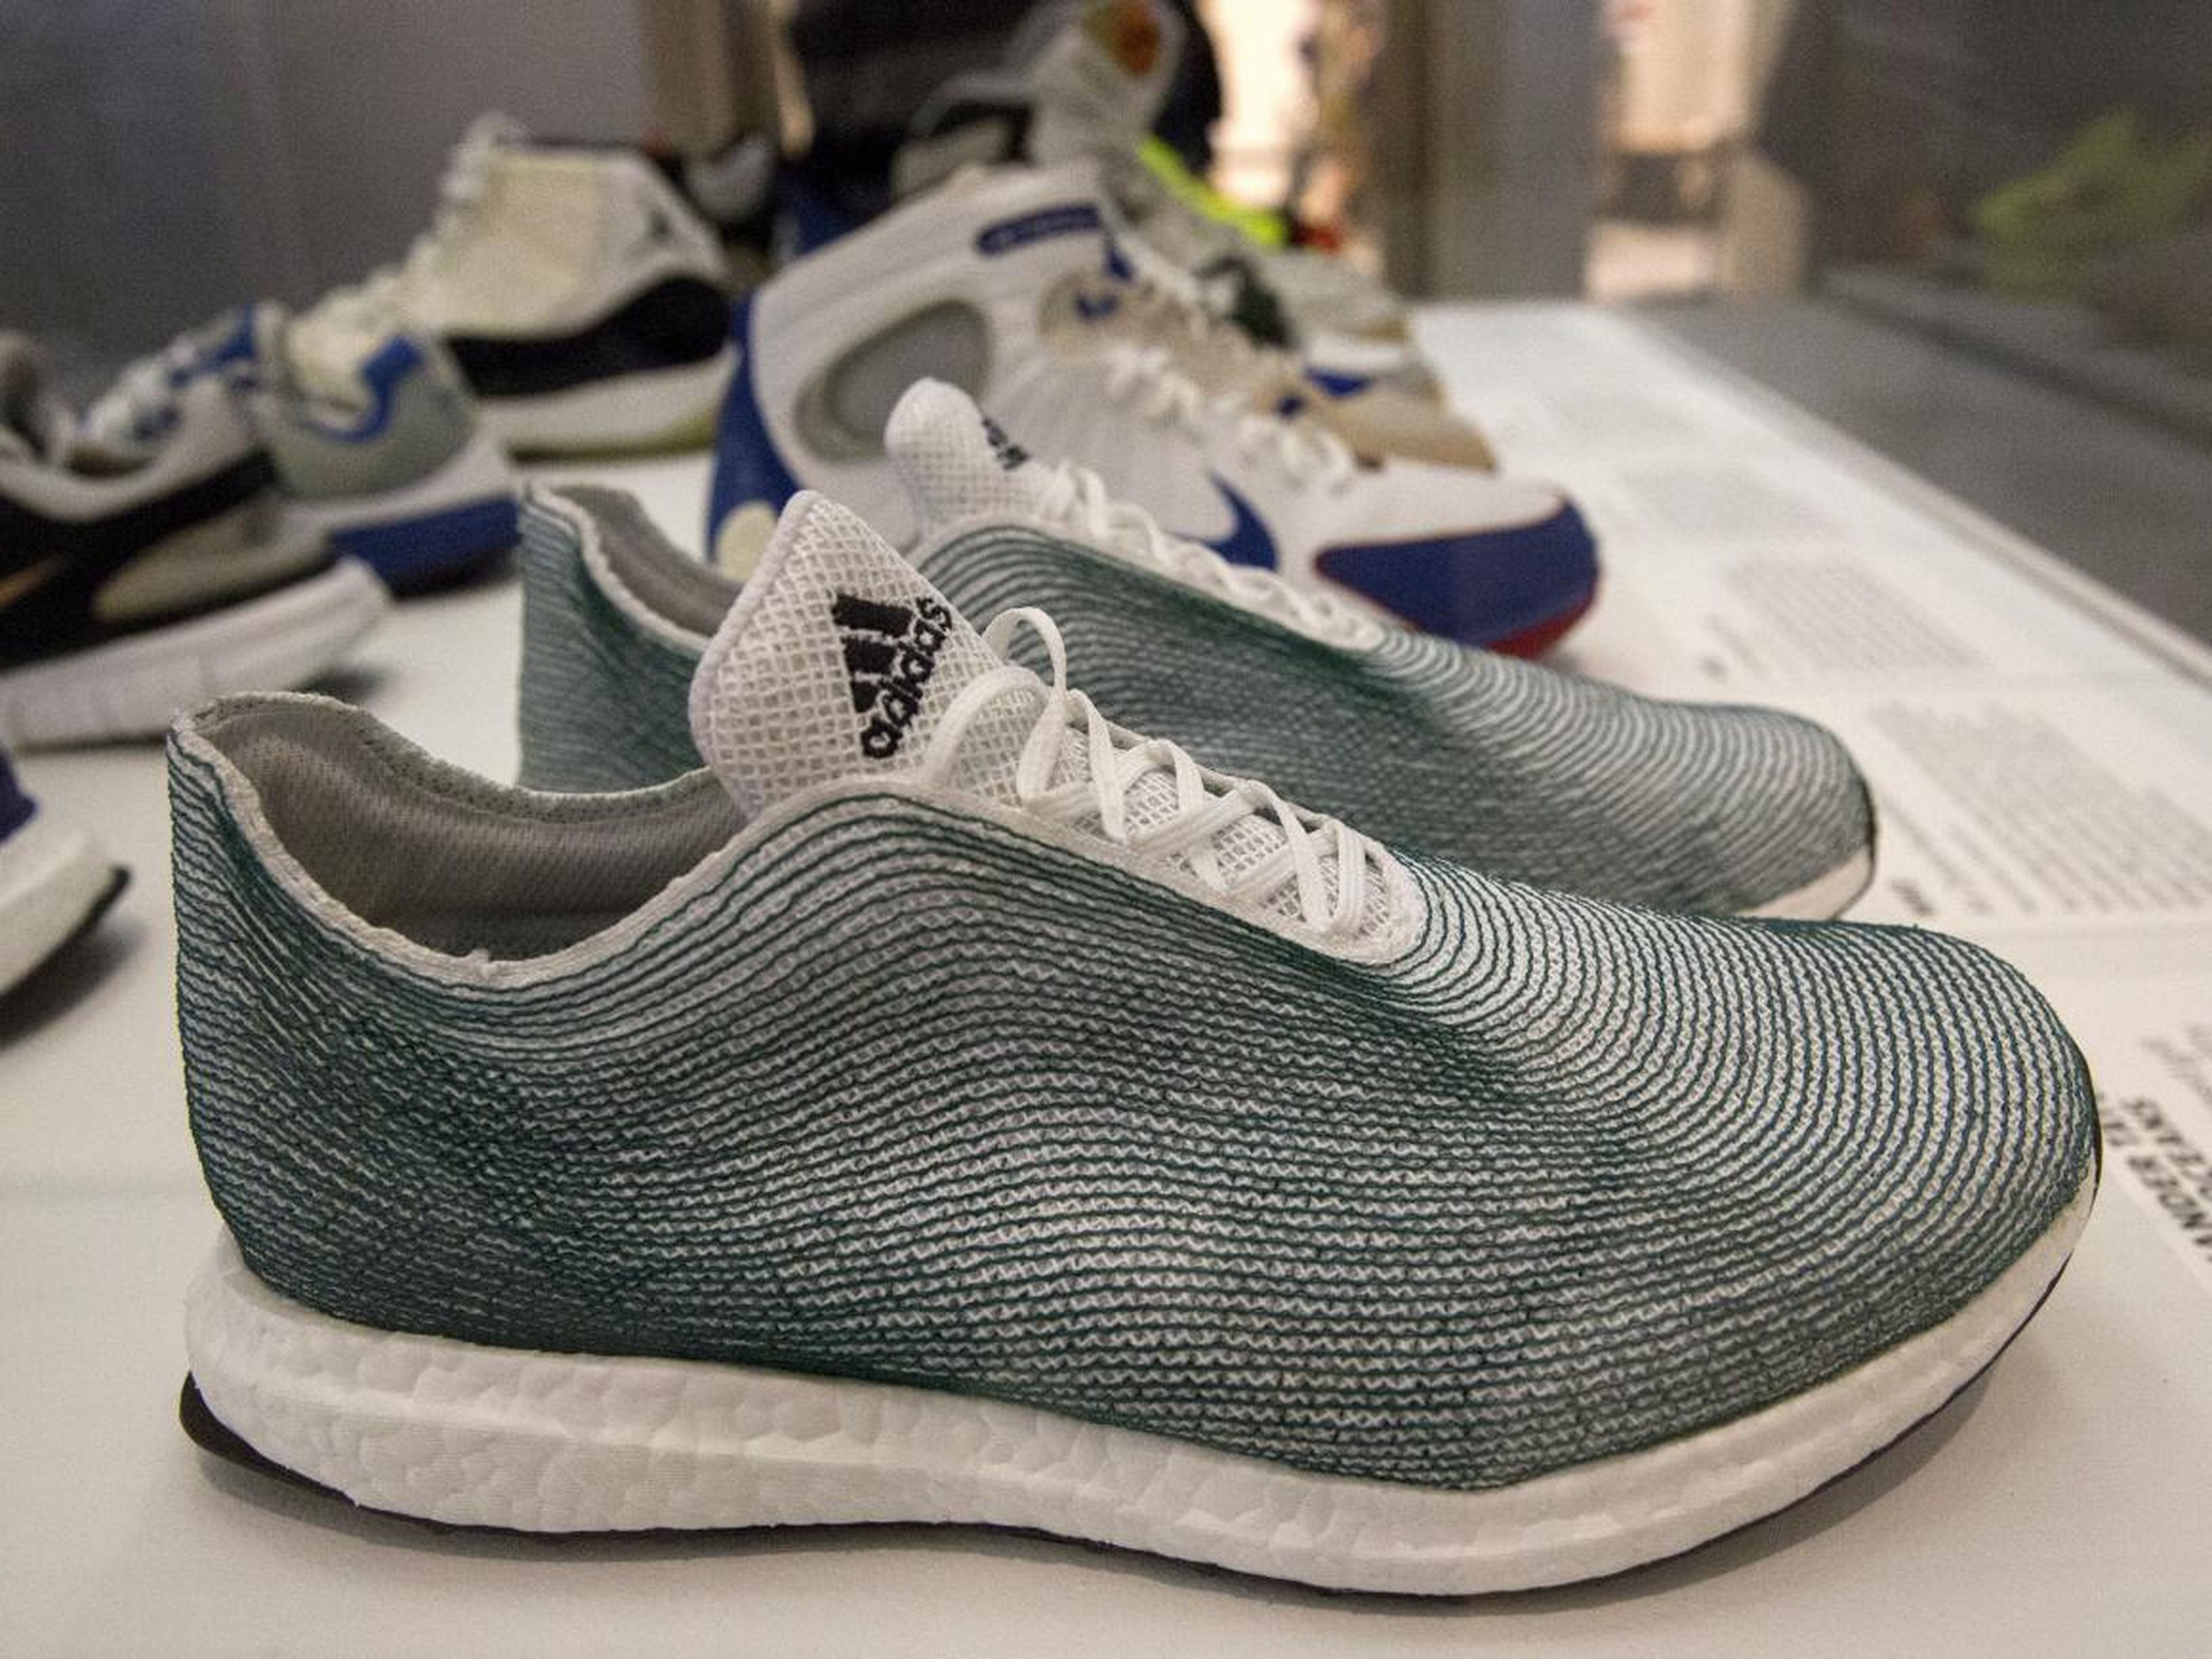 9. Adidas comenzó a utilizar materiales reciclados para la industria textil en su colaboración Adidas x Parley para los océanos en 2015.